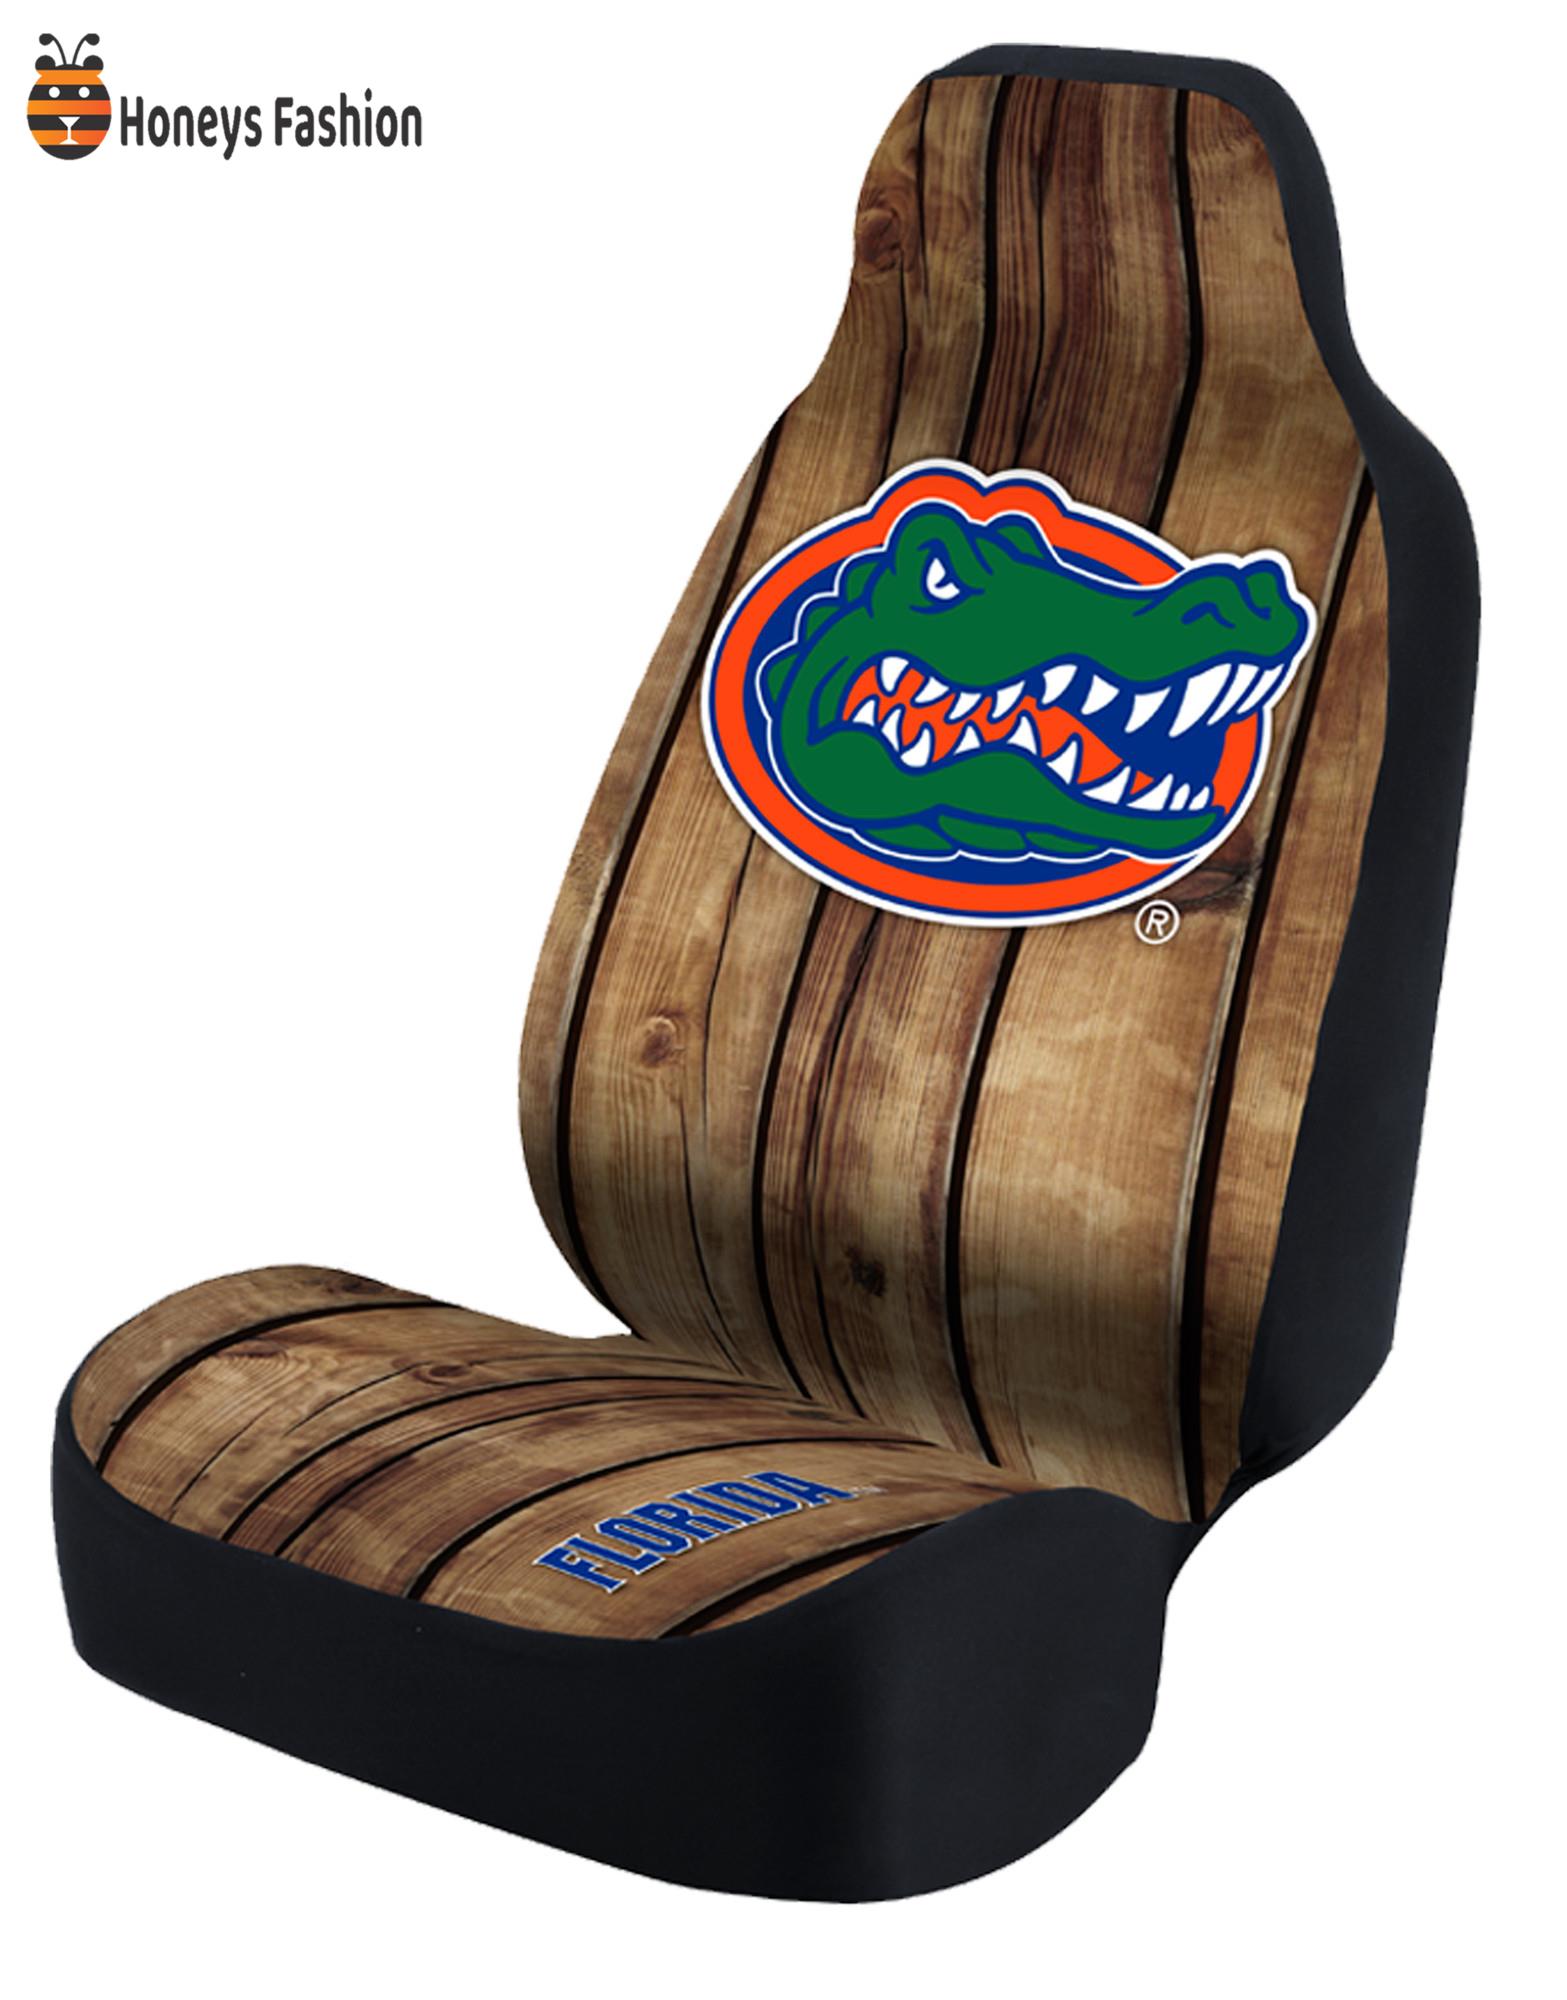 Florida Gators DIstressed Wood Car Seat Cover